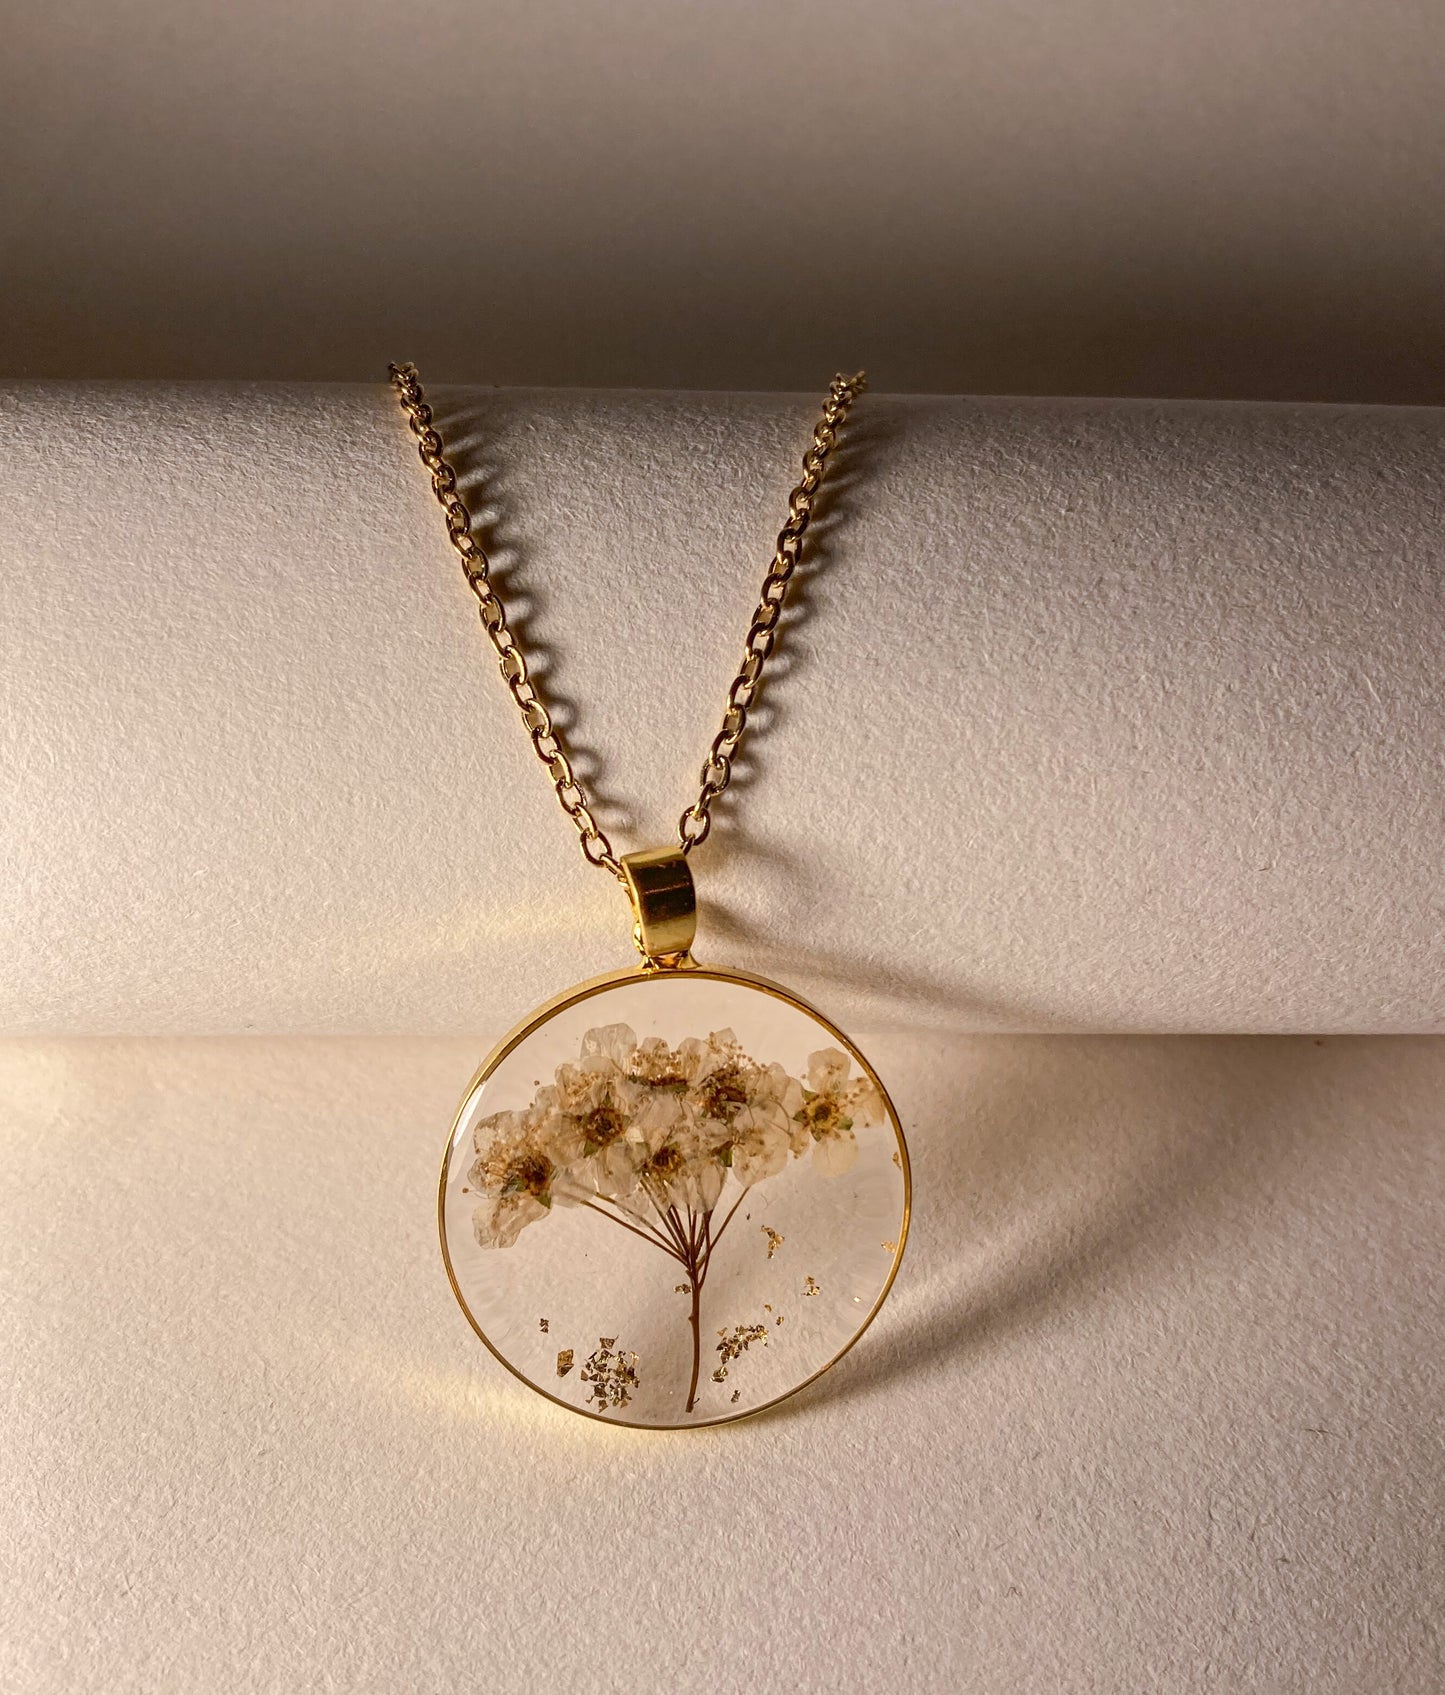 Pressed flower necklace - White Flower arrangements